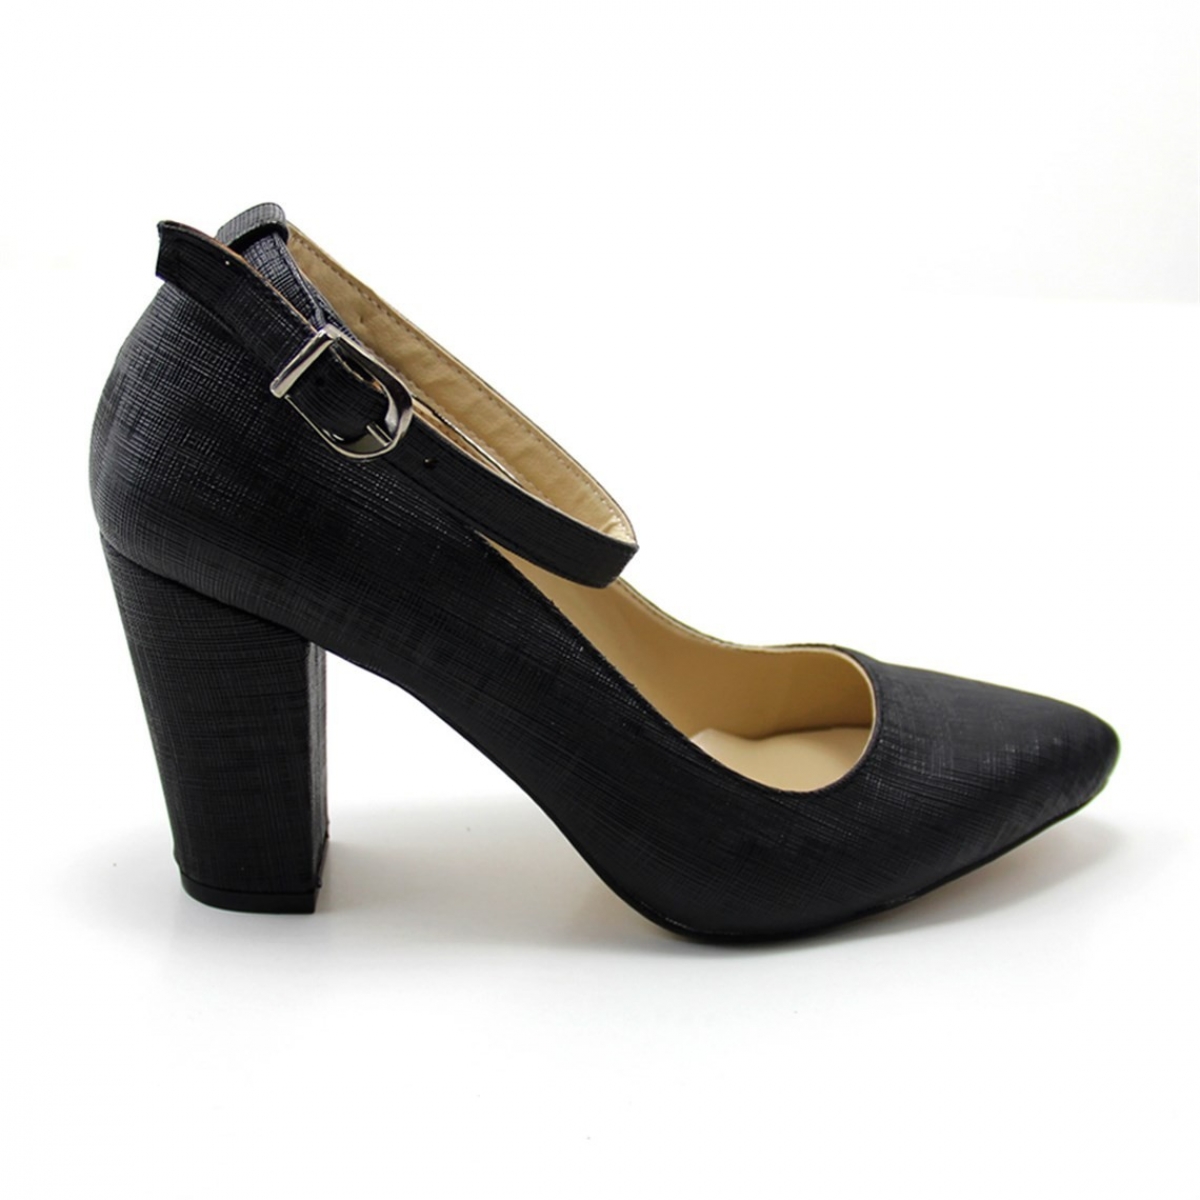 Flo Günlük Topuklu Siyah-Baskılı Kadın Ayakkabı N-2601. 2